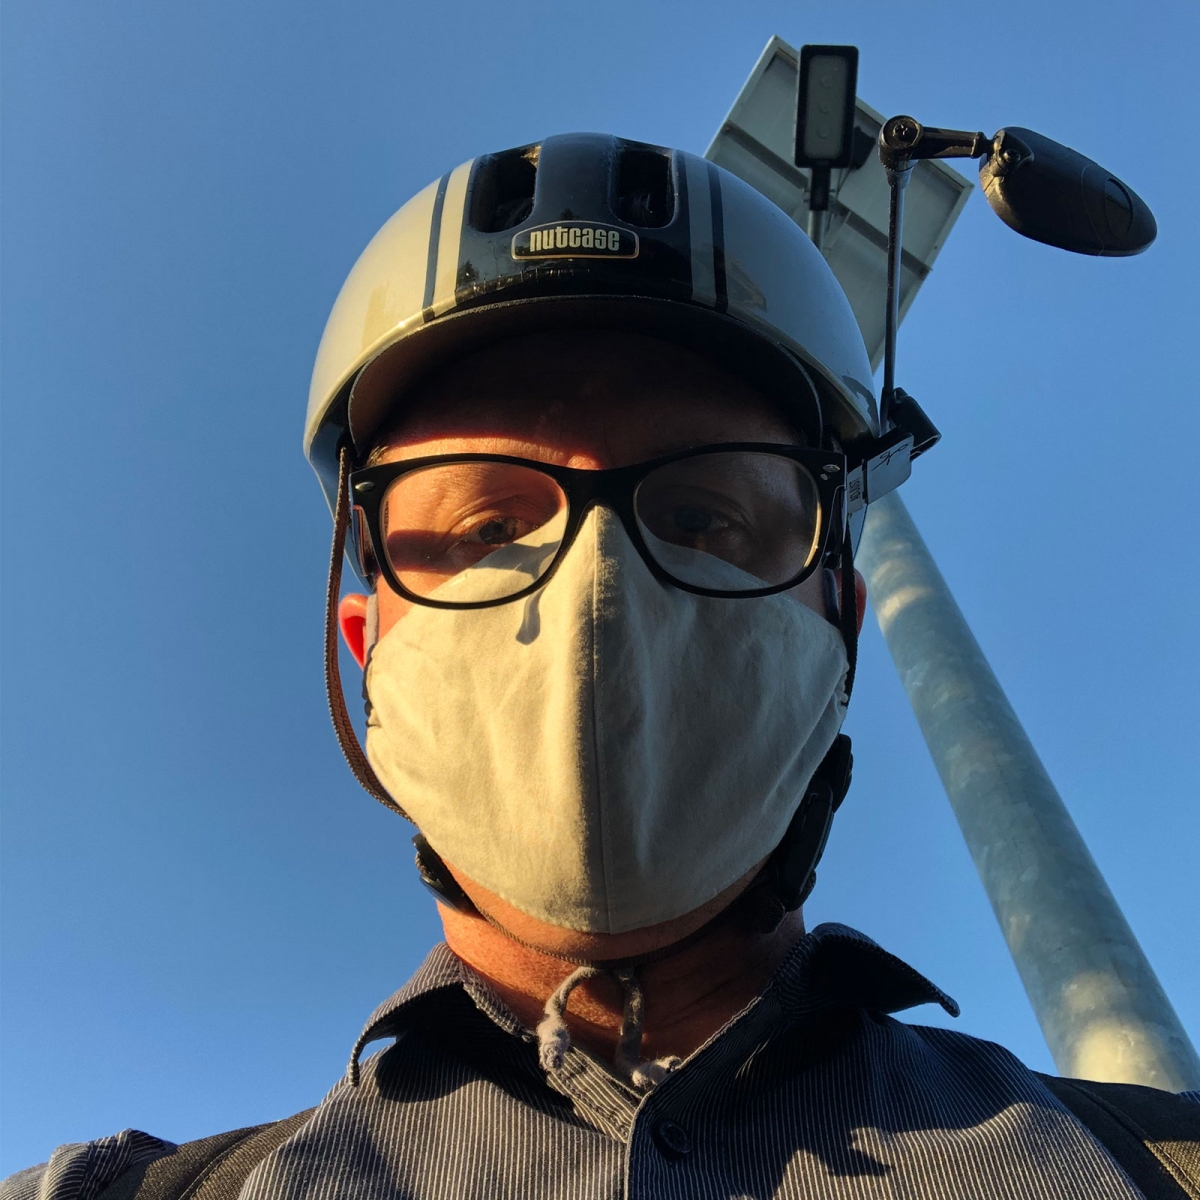 Selfie in commute mask and bike helmet